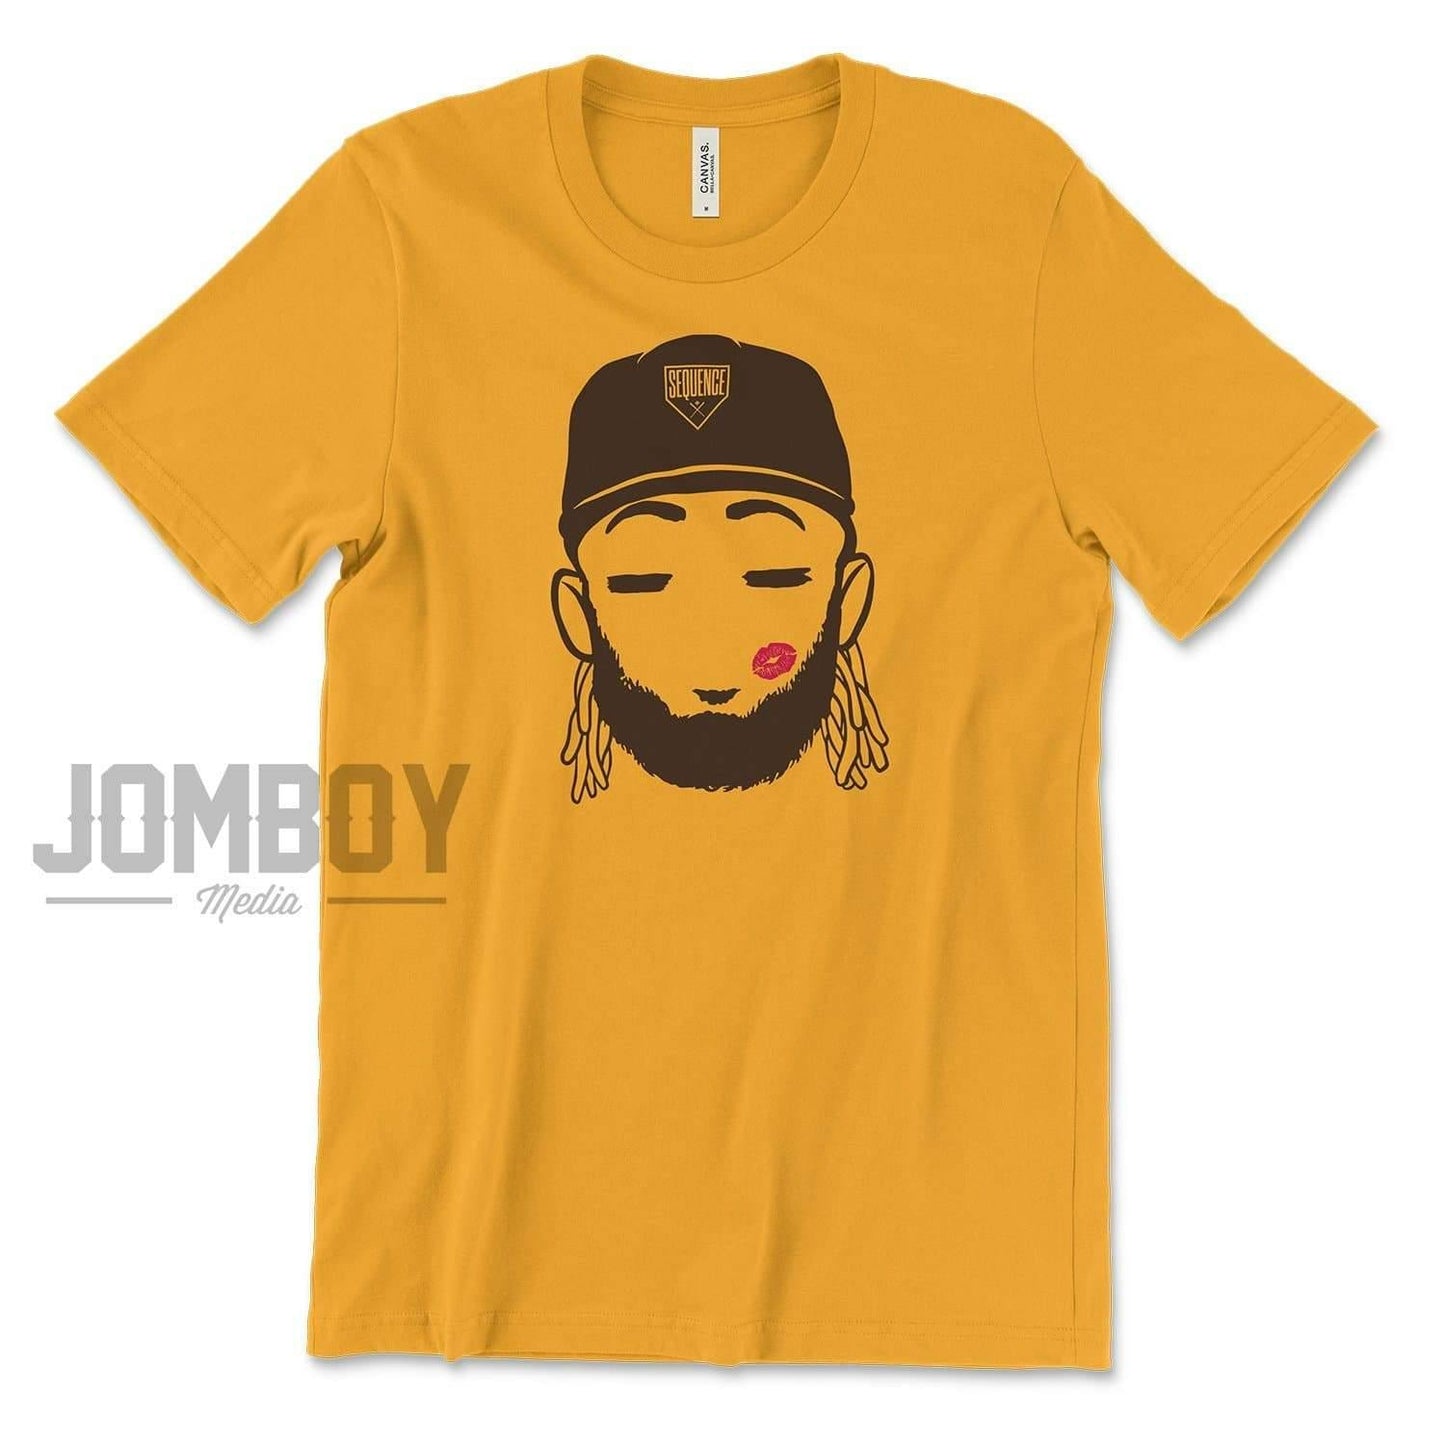 Hot Boy Fernando | T-Shirt - Jomboy Media